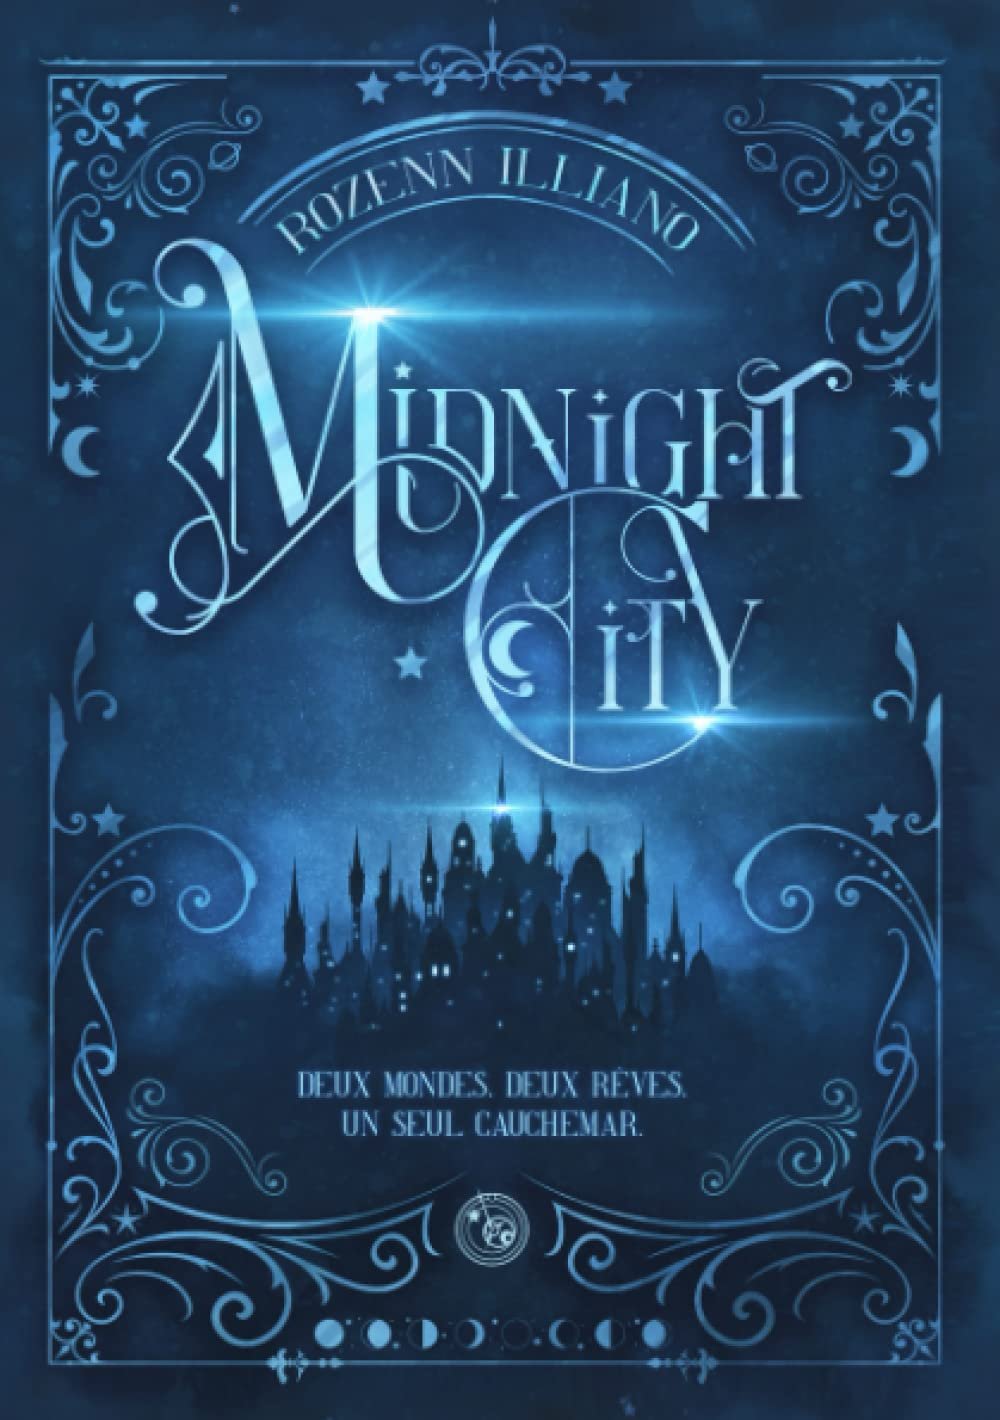 Rozenn Illiano – Midnight City